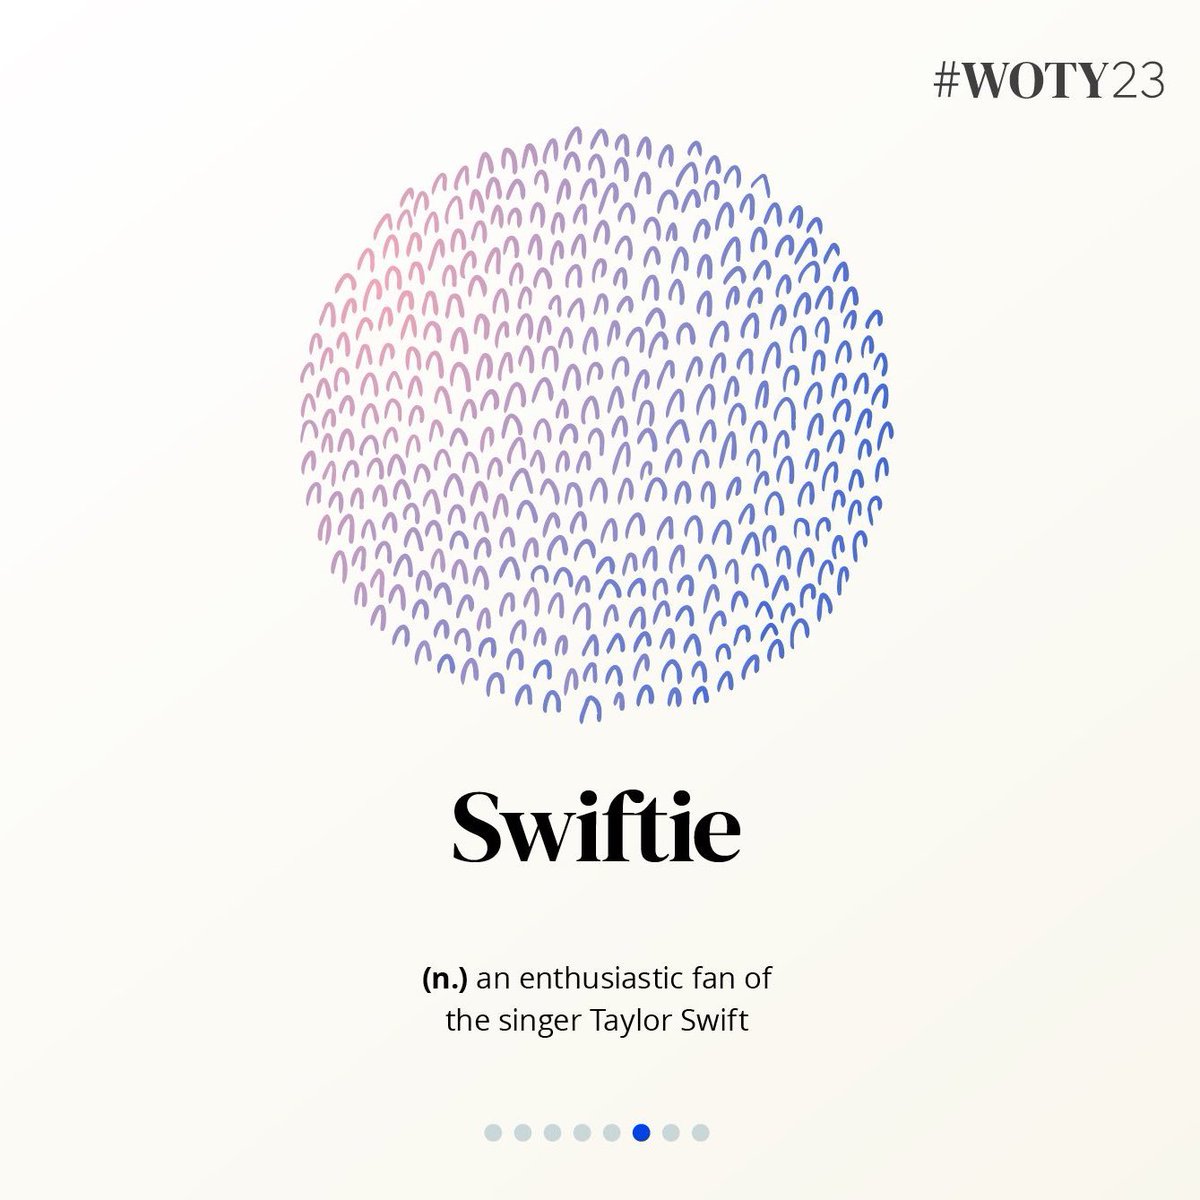 📖| La palabra 'Swiftie' fue elegida como una de las Palabras del Año por Oxford en su lista anual de 'Words Of The Year'. #WOTY23 🖊️